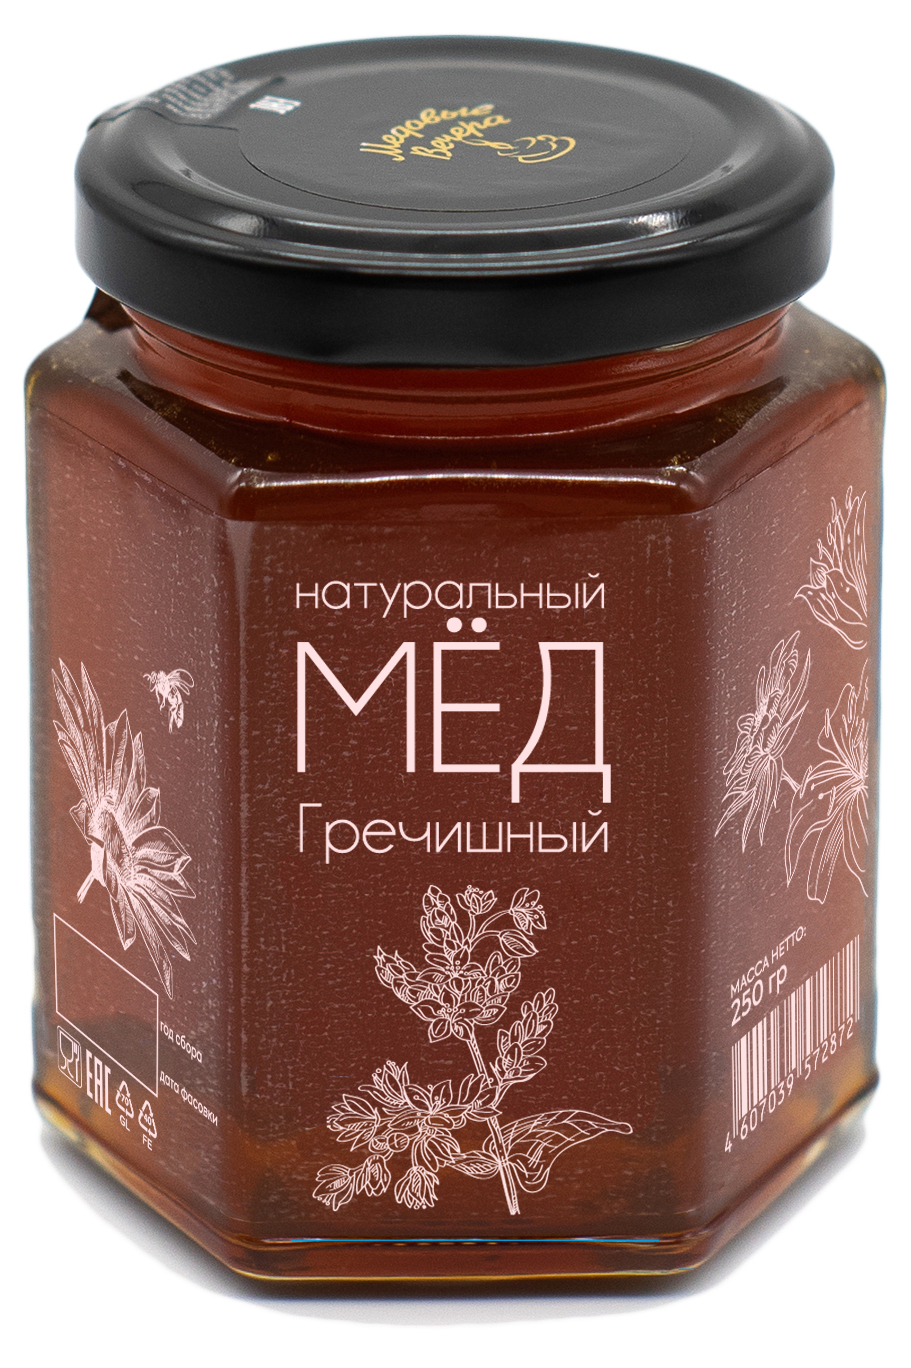 Мёд Медовые вечера натуральный, гречишный, 250 г